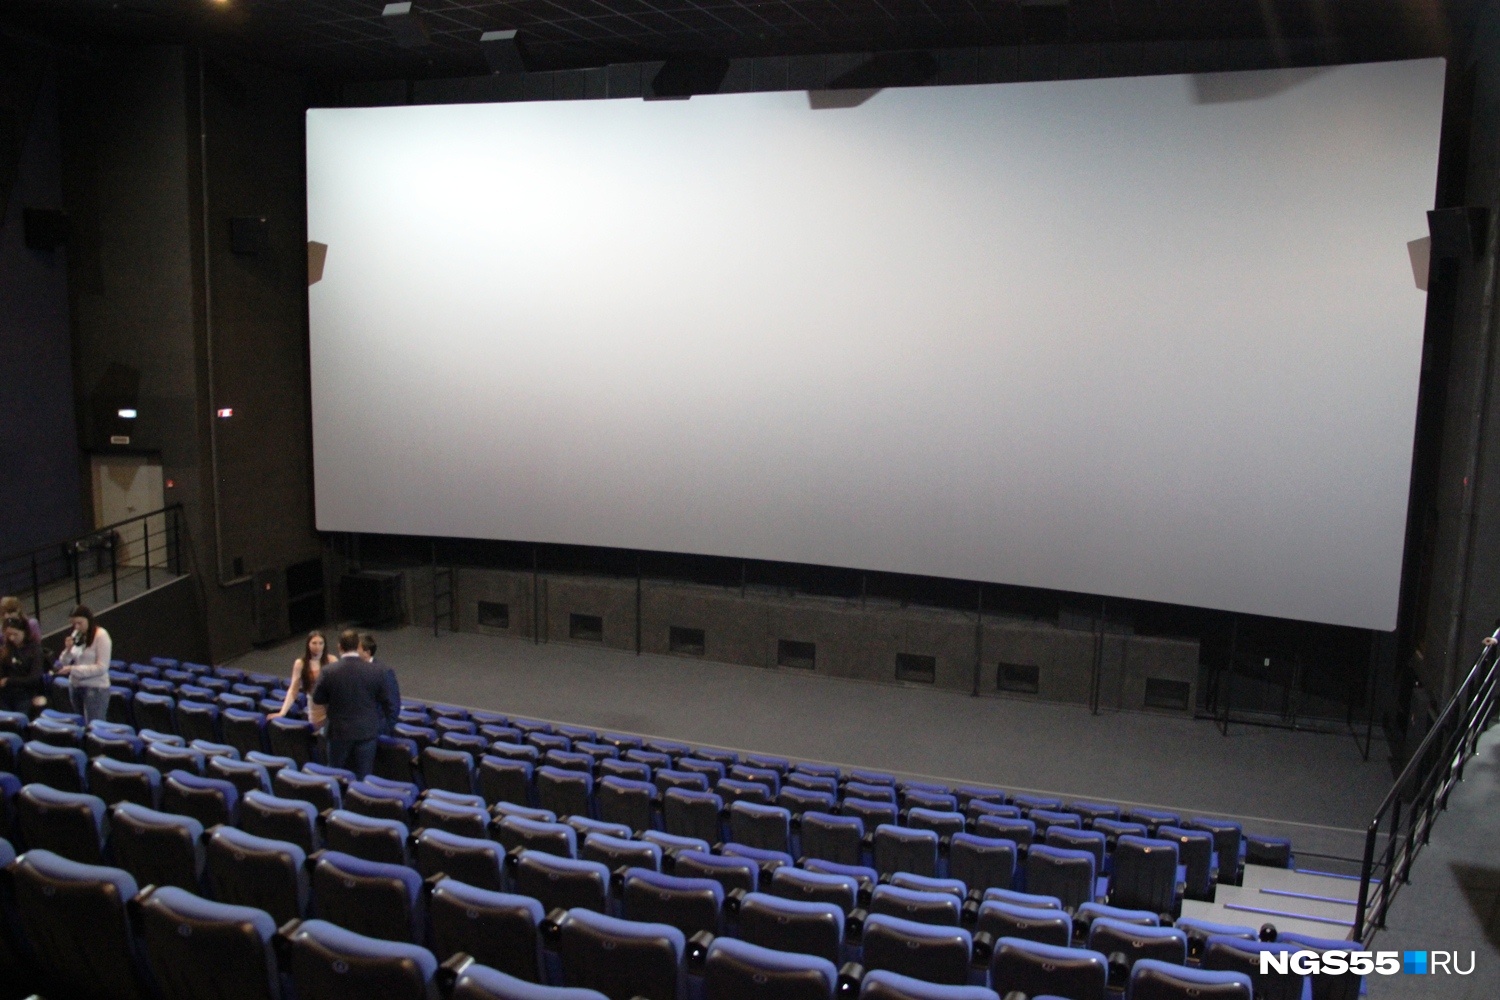 В Кузбассе насчитывается 105 киноучреждений, в которых открыто 149 кинозалов. Из них 84 — государственные и муниципальные кинотеатры с 86 кинозалами, 21 — частные кинотеатры с 63 кинозалами